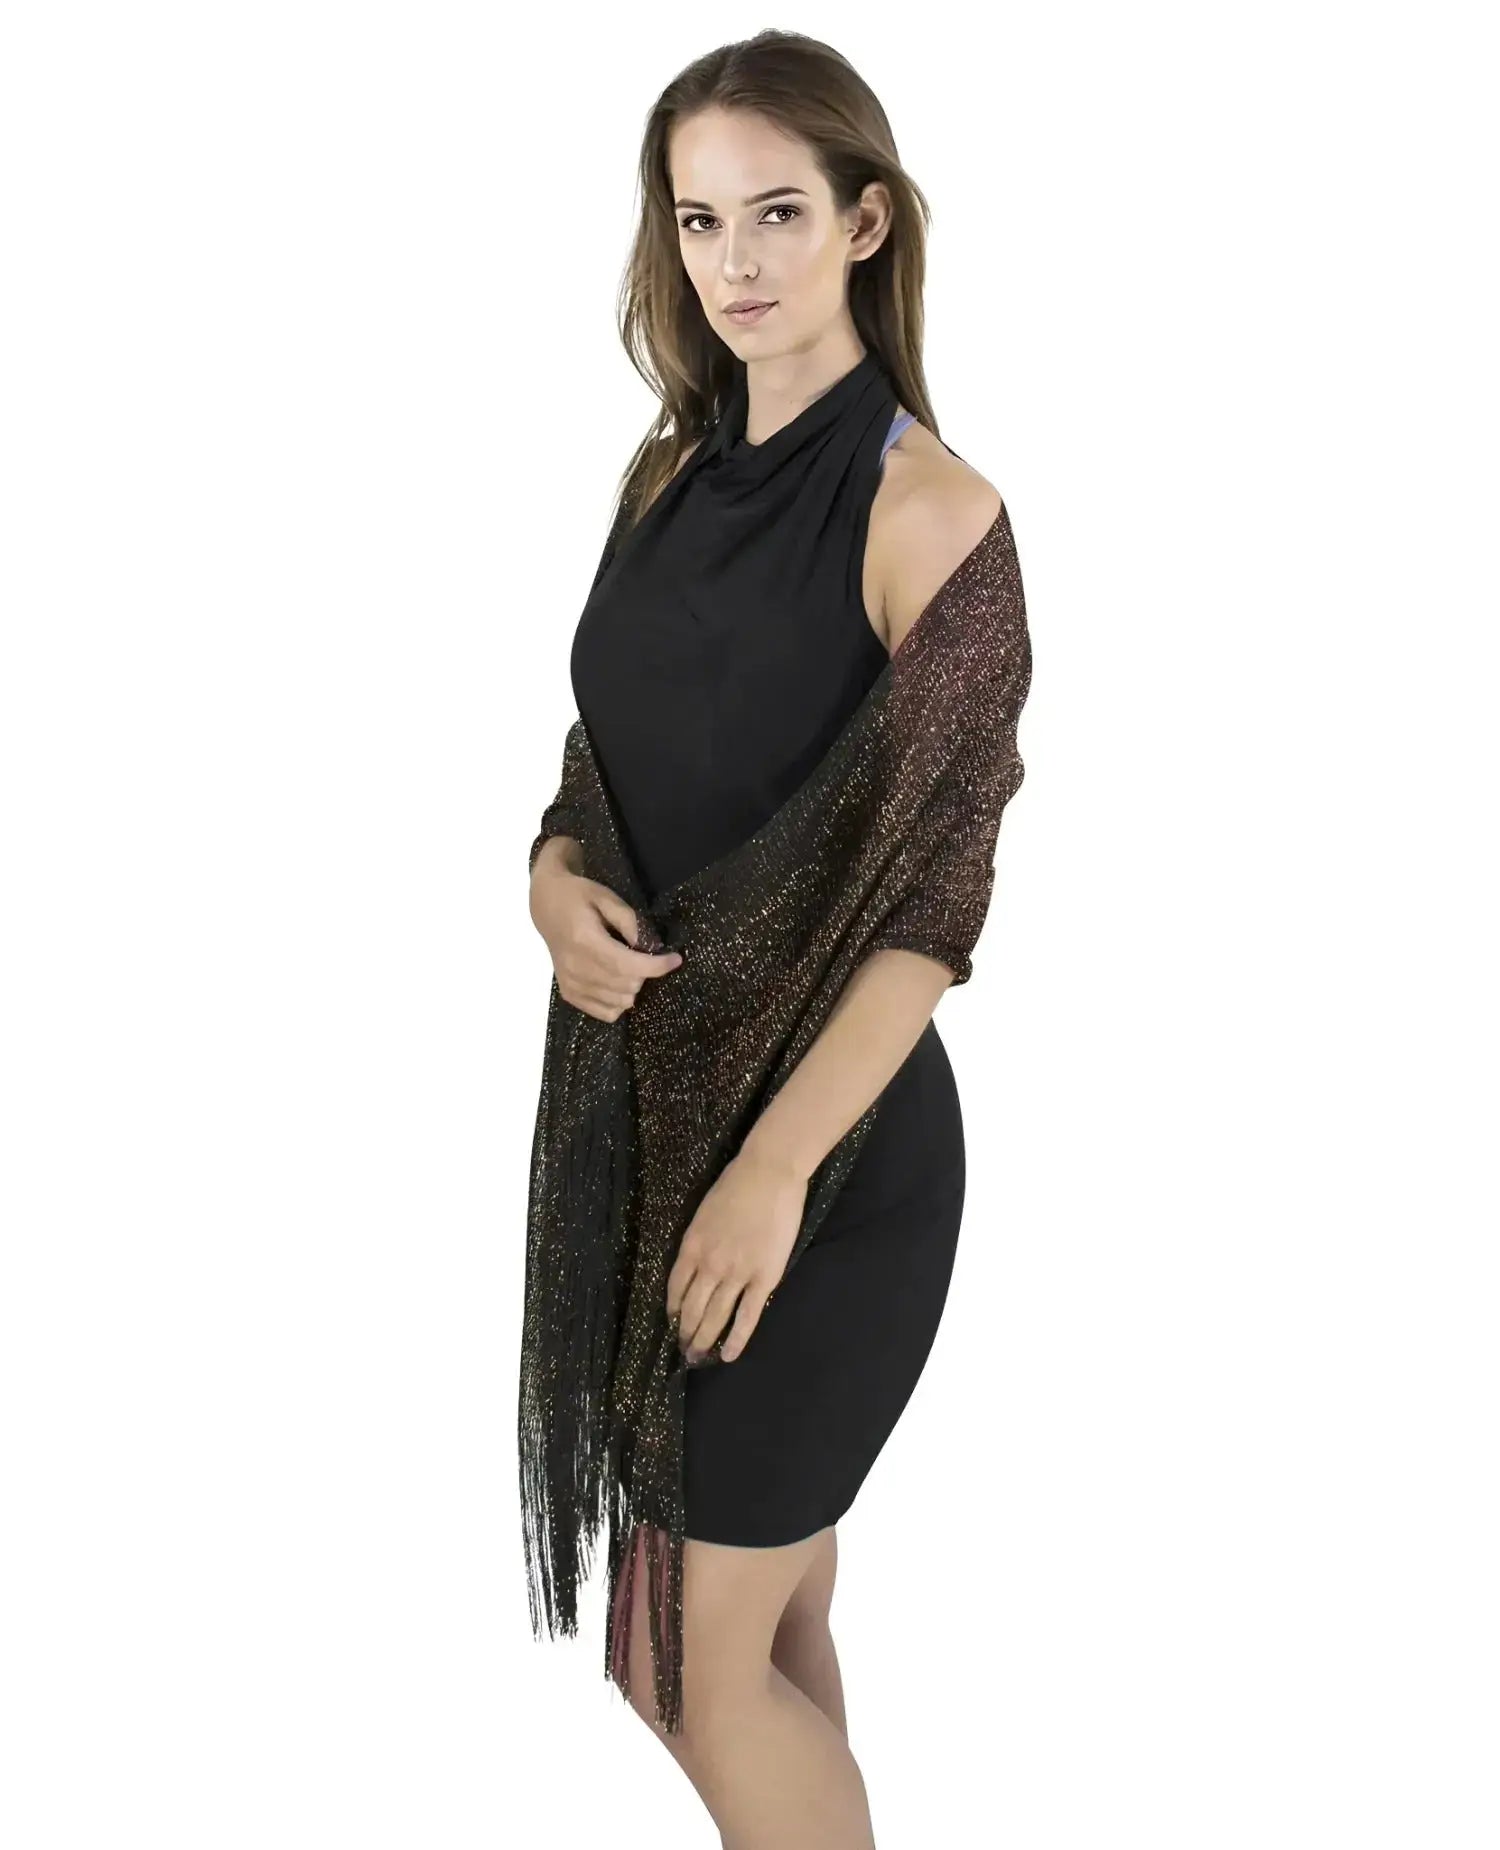 Black dress woman wearing Shimmering Lurex Scarf from product ’Shimmering Lurex Scarf Fishnet Evening Shawl Scarves’